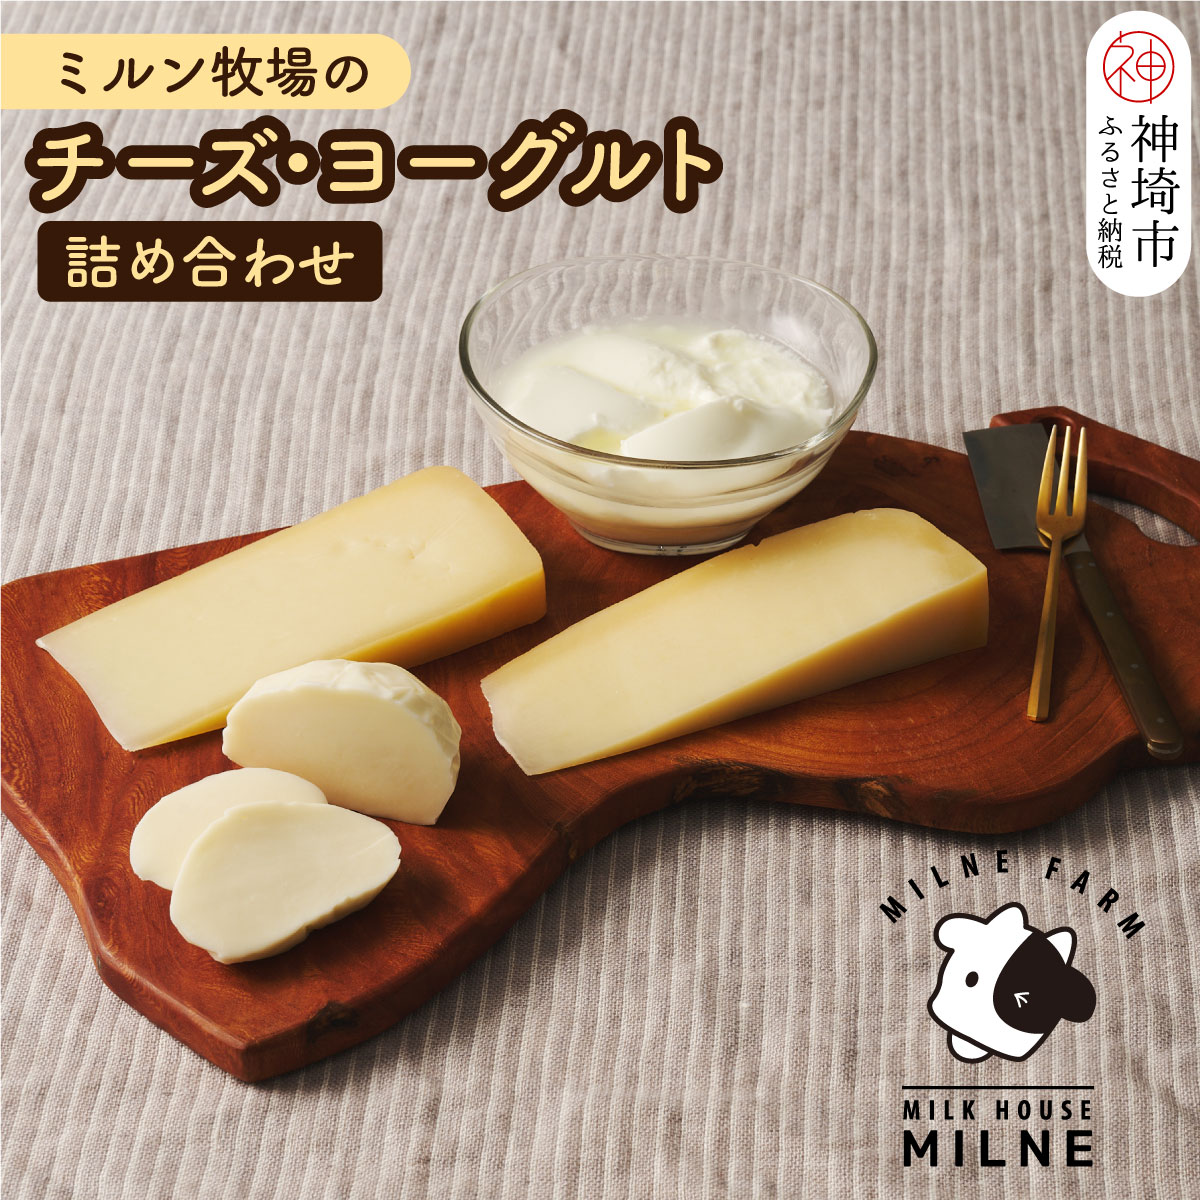 【ふるさと納税】ミルン牧場のチーズ・ヨーグルト詰...の商品画像